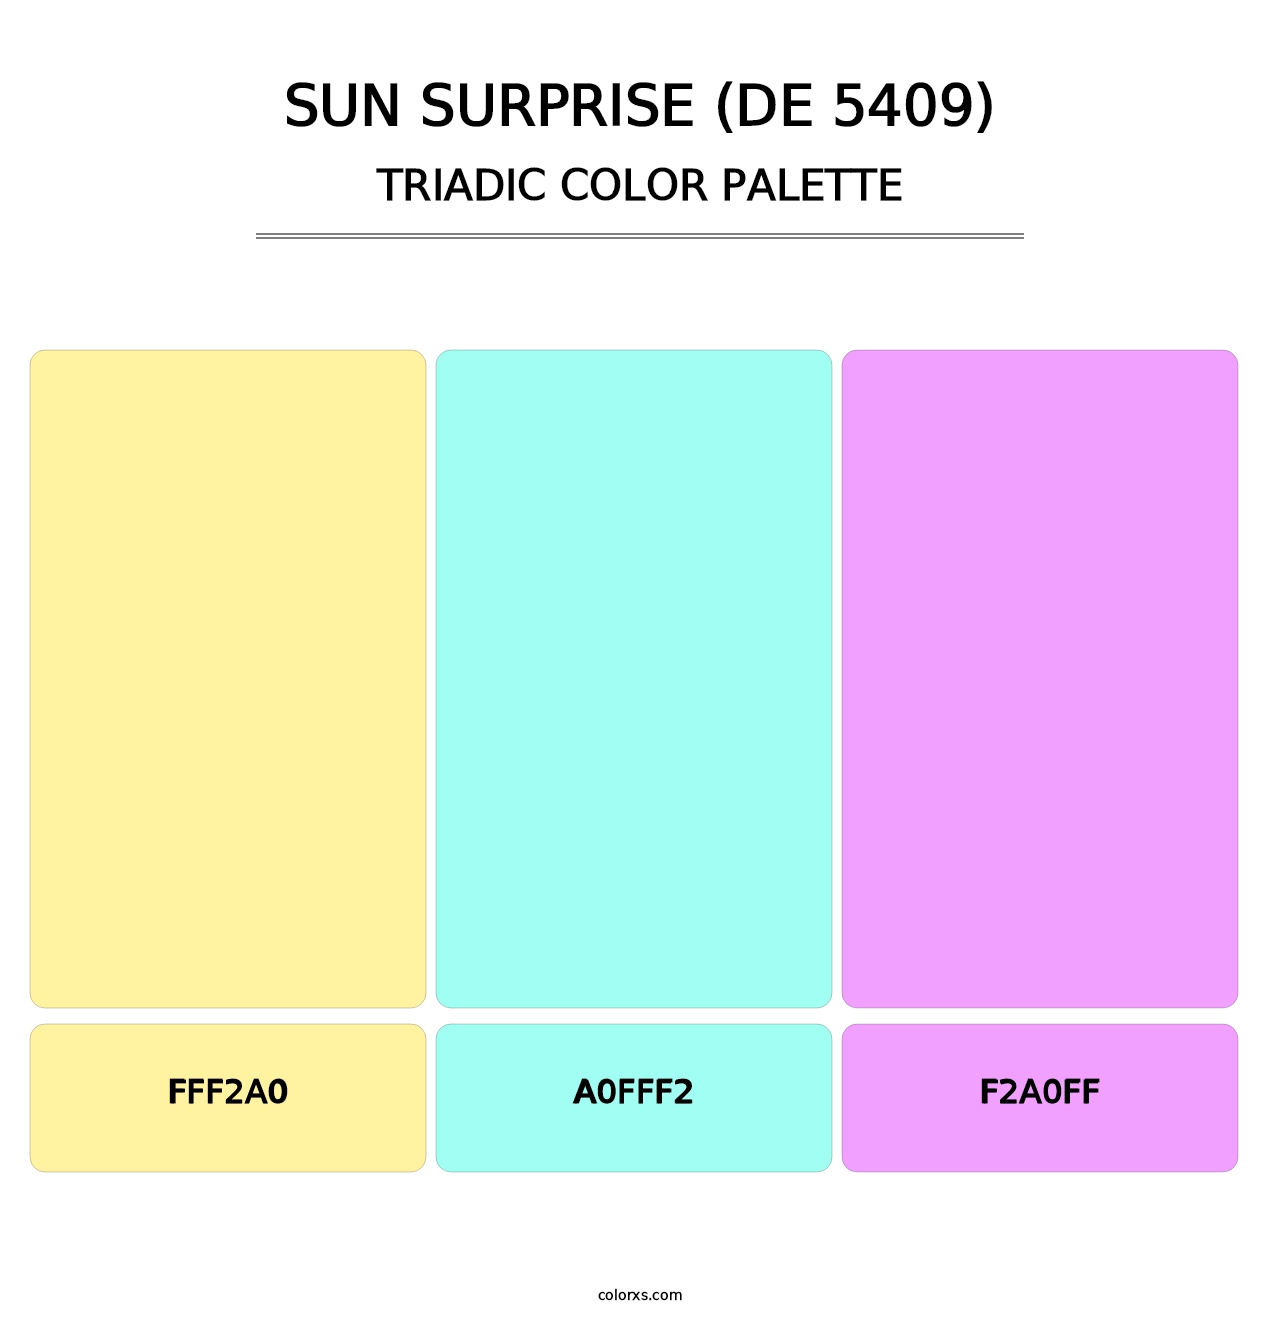 Sun Surprise (DE 5409) - Triadic Color Palette